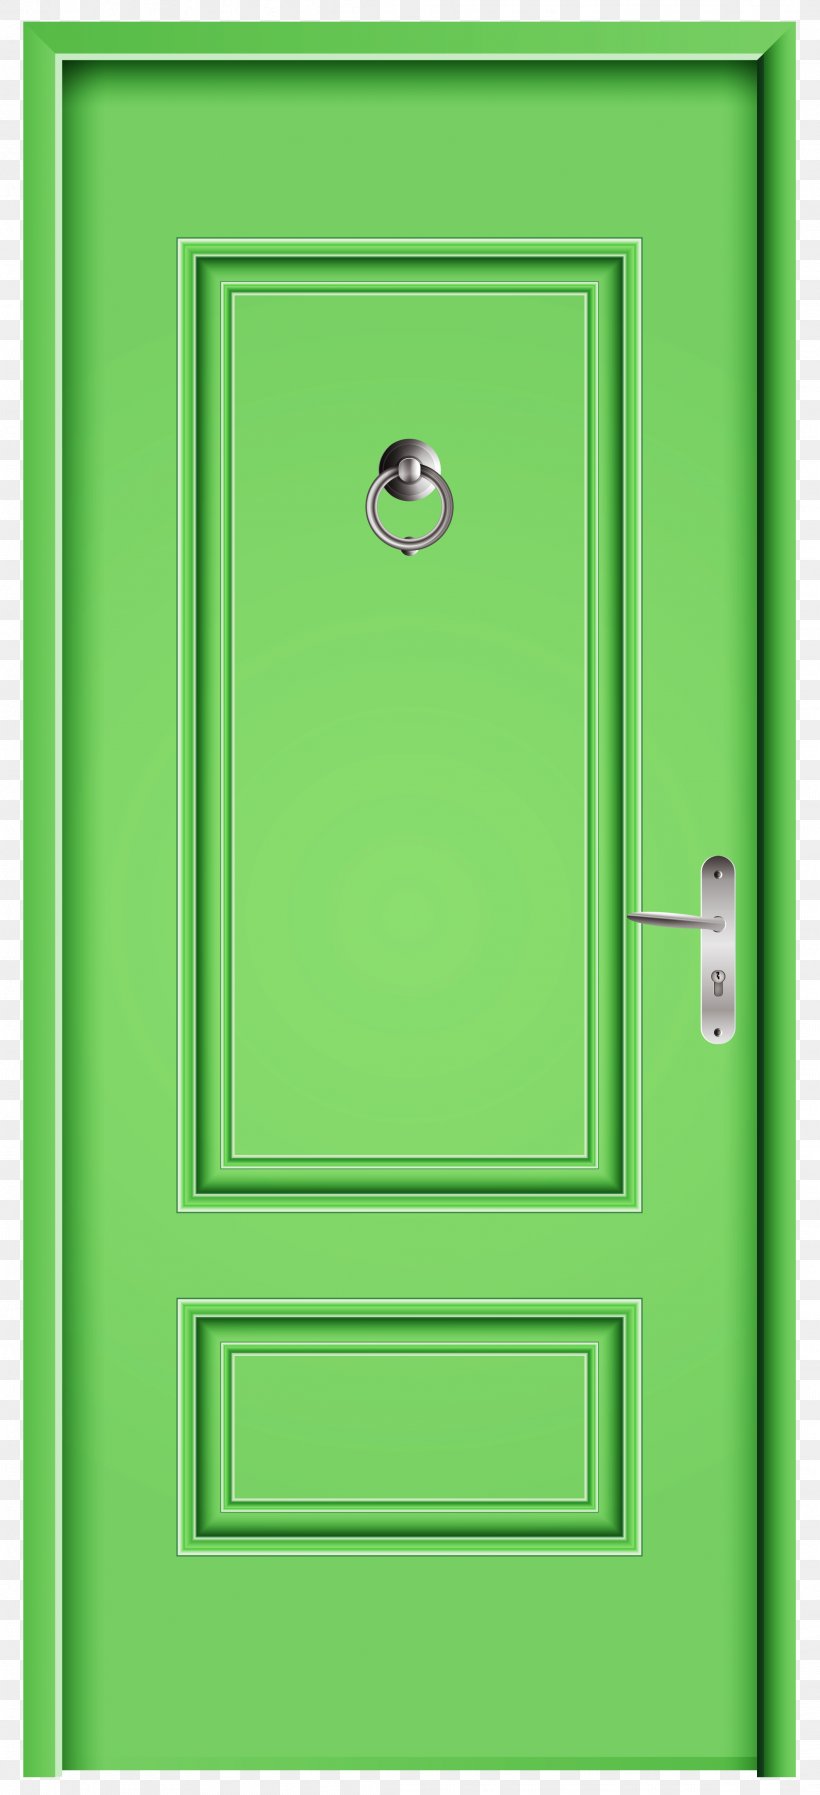 Door Clip Art, PNG, 2121x4644px, Door, Door Knockers, Drawing, Green, Line Art Download Free